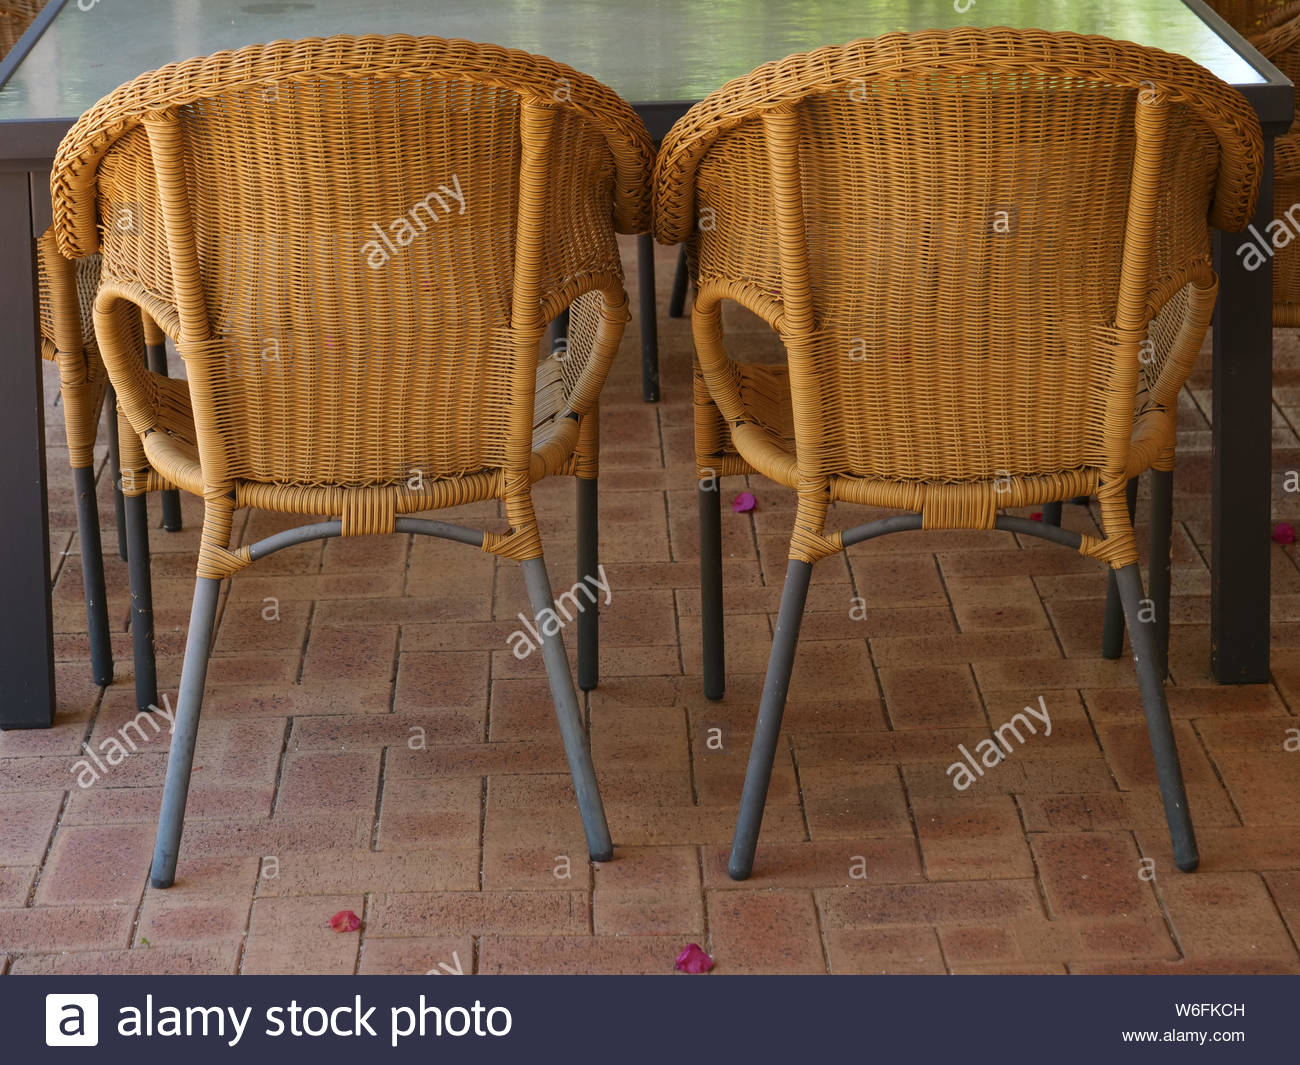 deux chaises a cote d une table de jardin sur un patio de brique en beton dans une cour d une maison de banlieue dans l ouest de l australie w6fkch